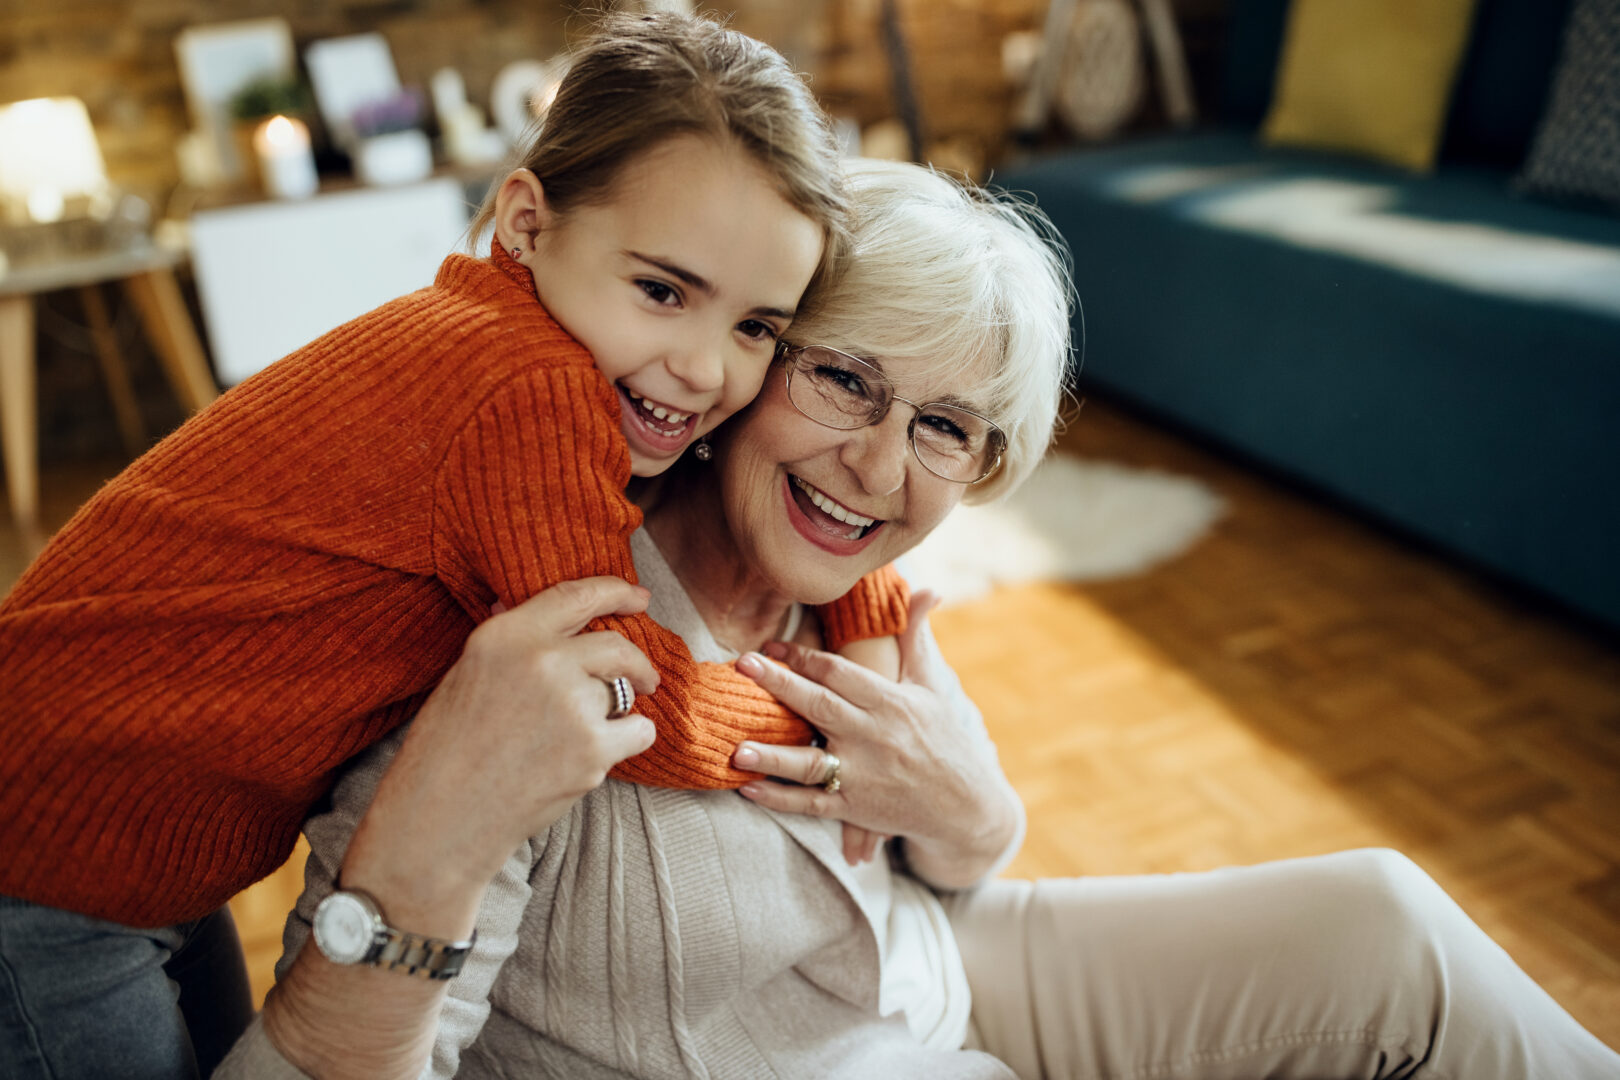 Residential Aged Care vs Retirement Living